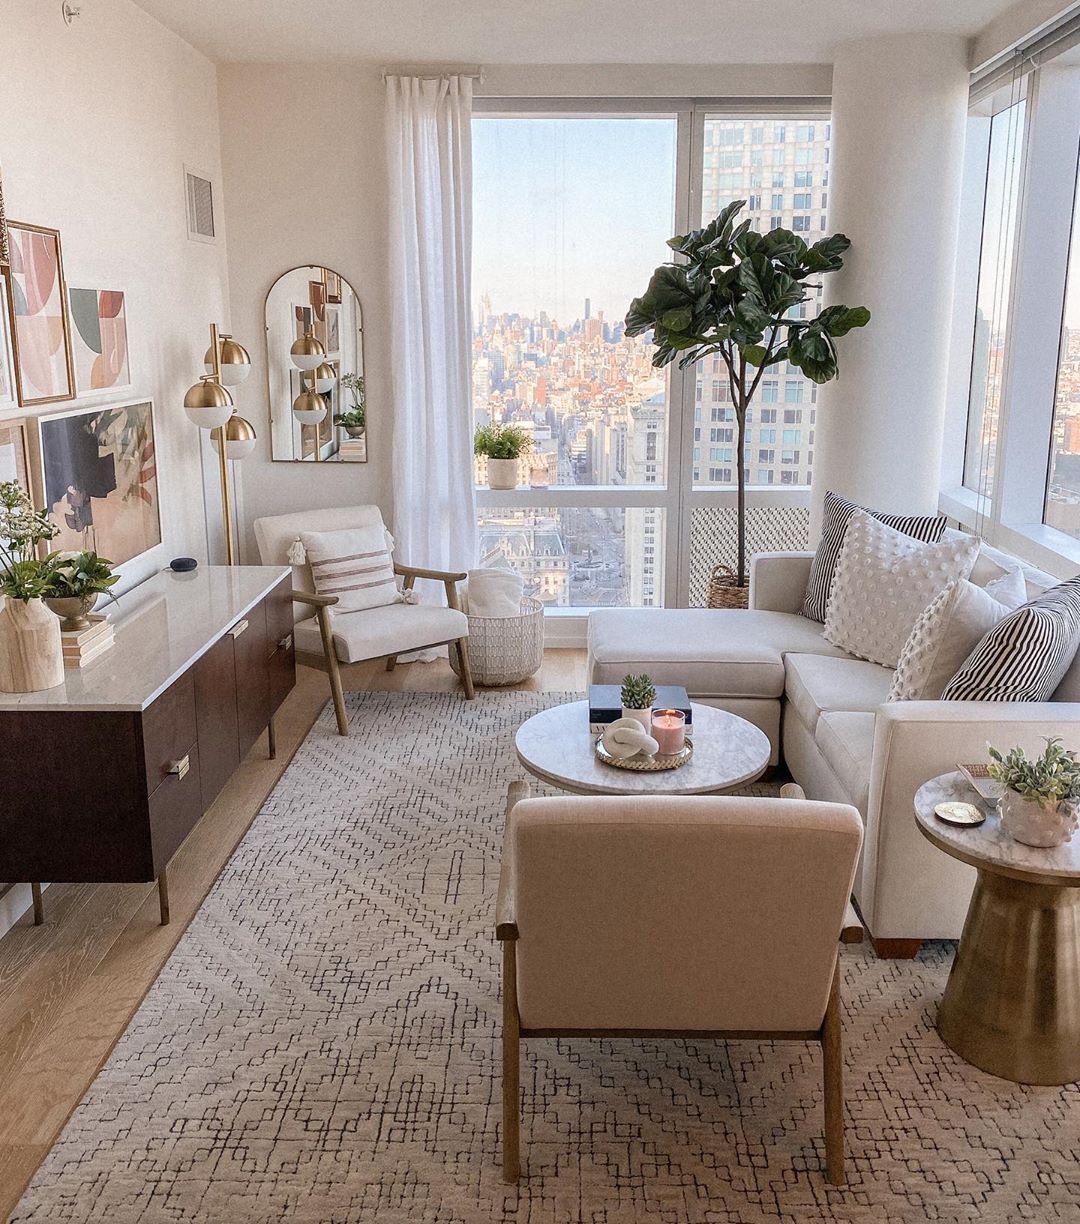 Choosing elegant apartment interior
design